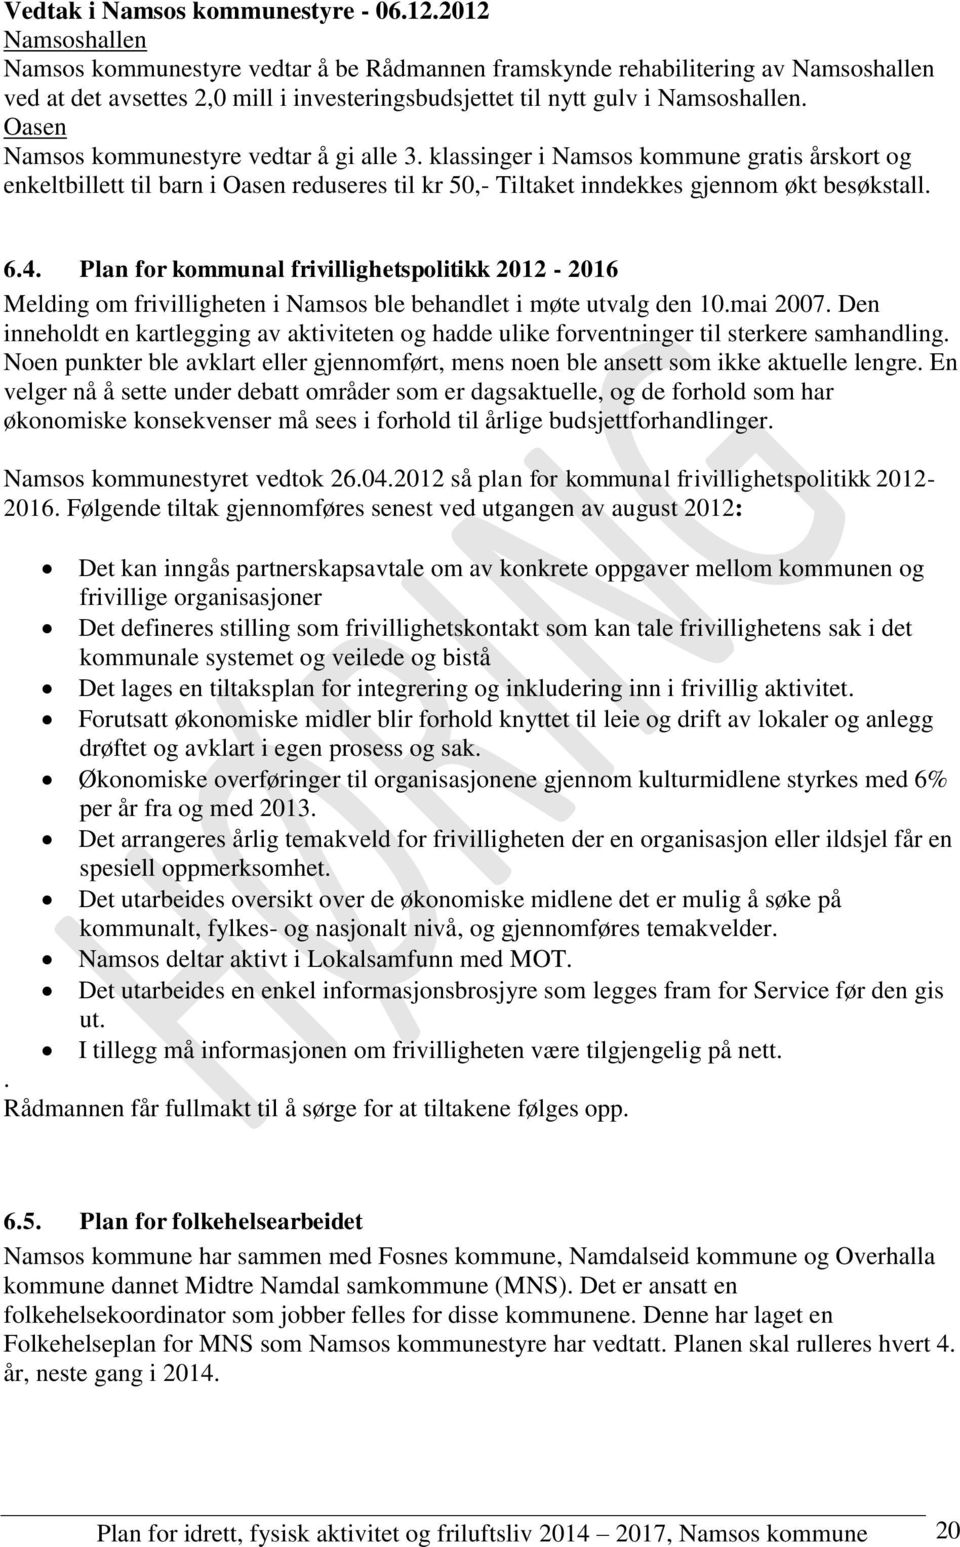 Oasen Namsos kommunestyre vedtar å gi alle 3. klassinger i Namsos kommune gratis årskort og enkeltbillett til barn i Oasen reduseres til kr 50,- Tiltaket inndekkes gjennom økt besøkstall. 6.4.